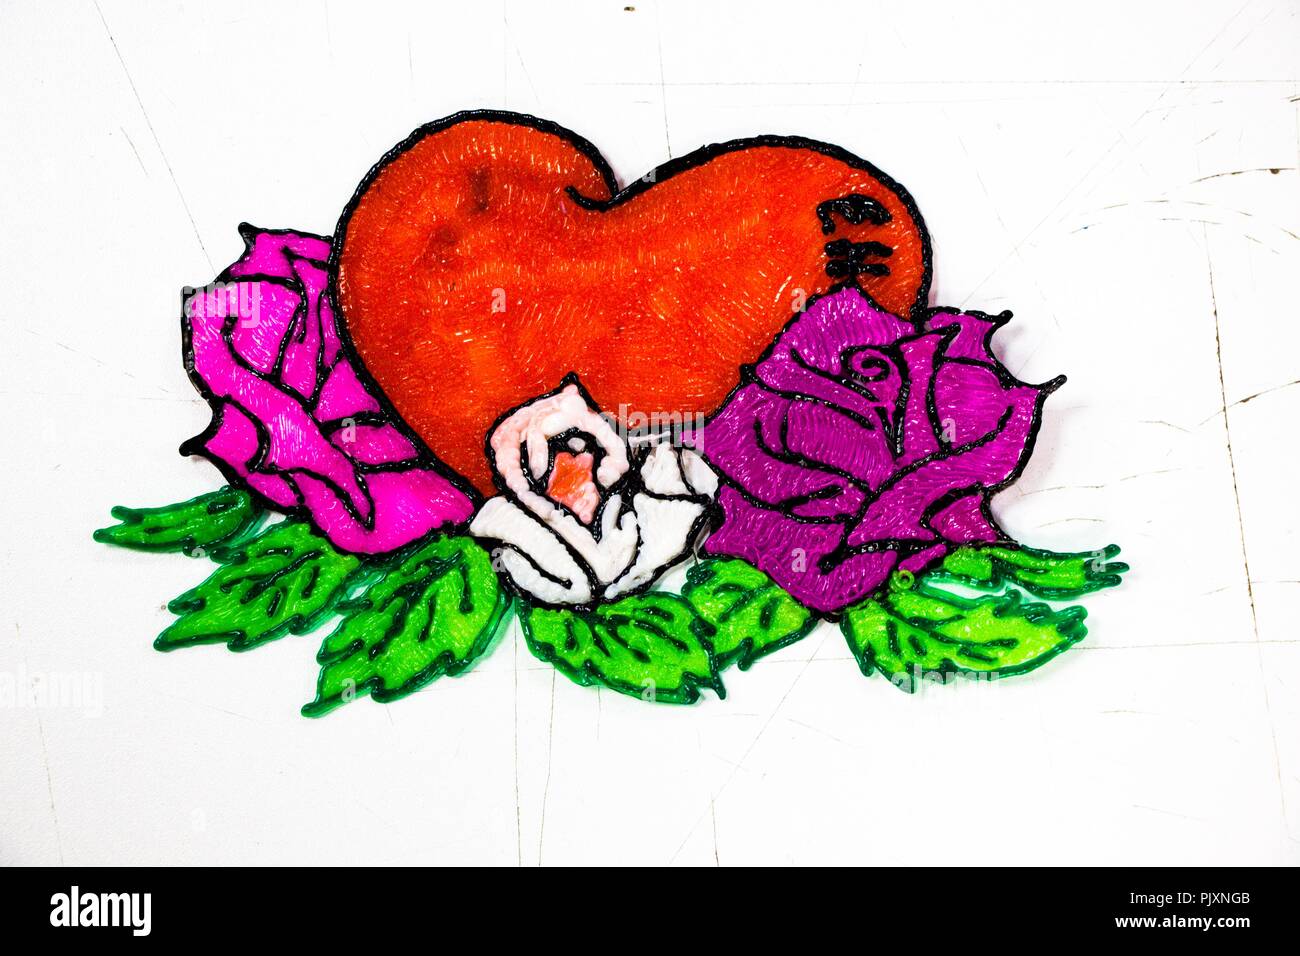 Cuore di colore rosso con rose e fiori di bianco e color porpora giacciono su uno sfondo bianco. Il cuore è un simbolo di San Valentino, la giornata di al Foto Stock